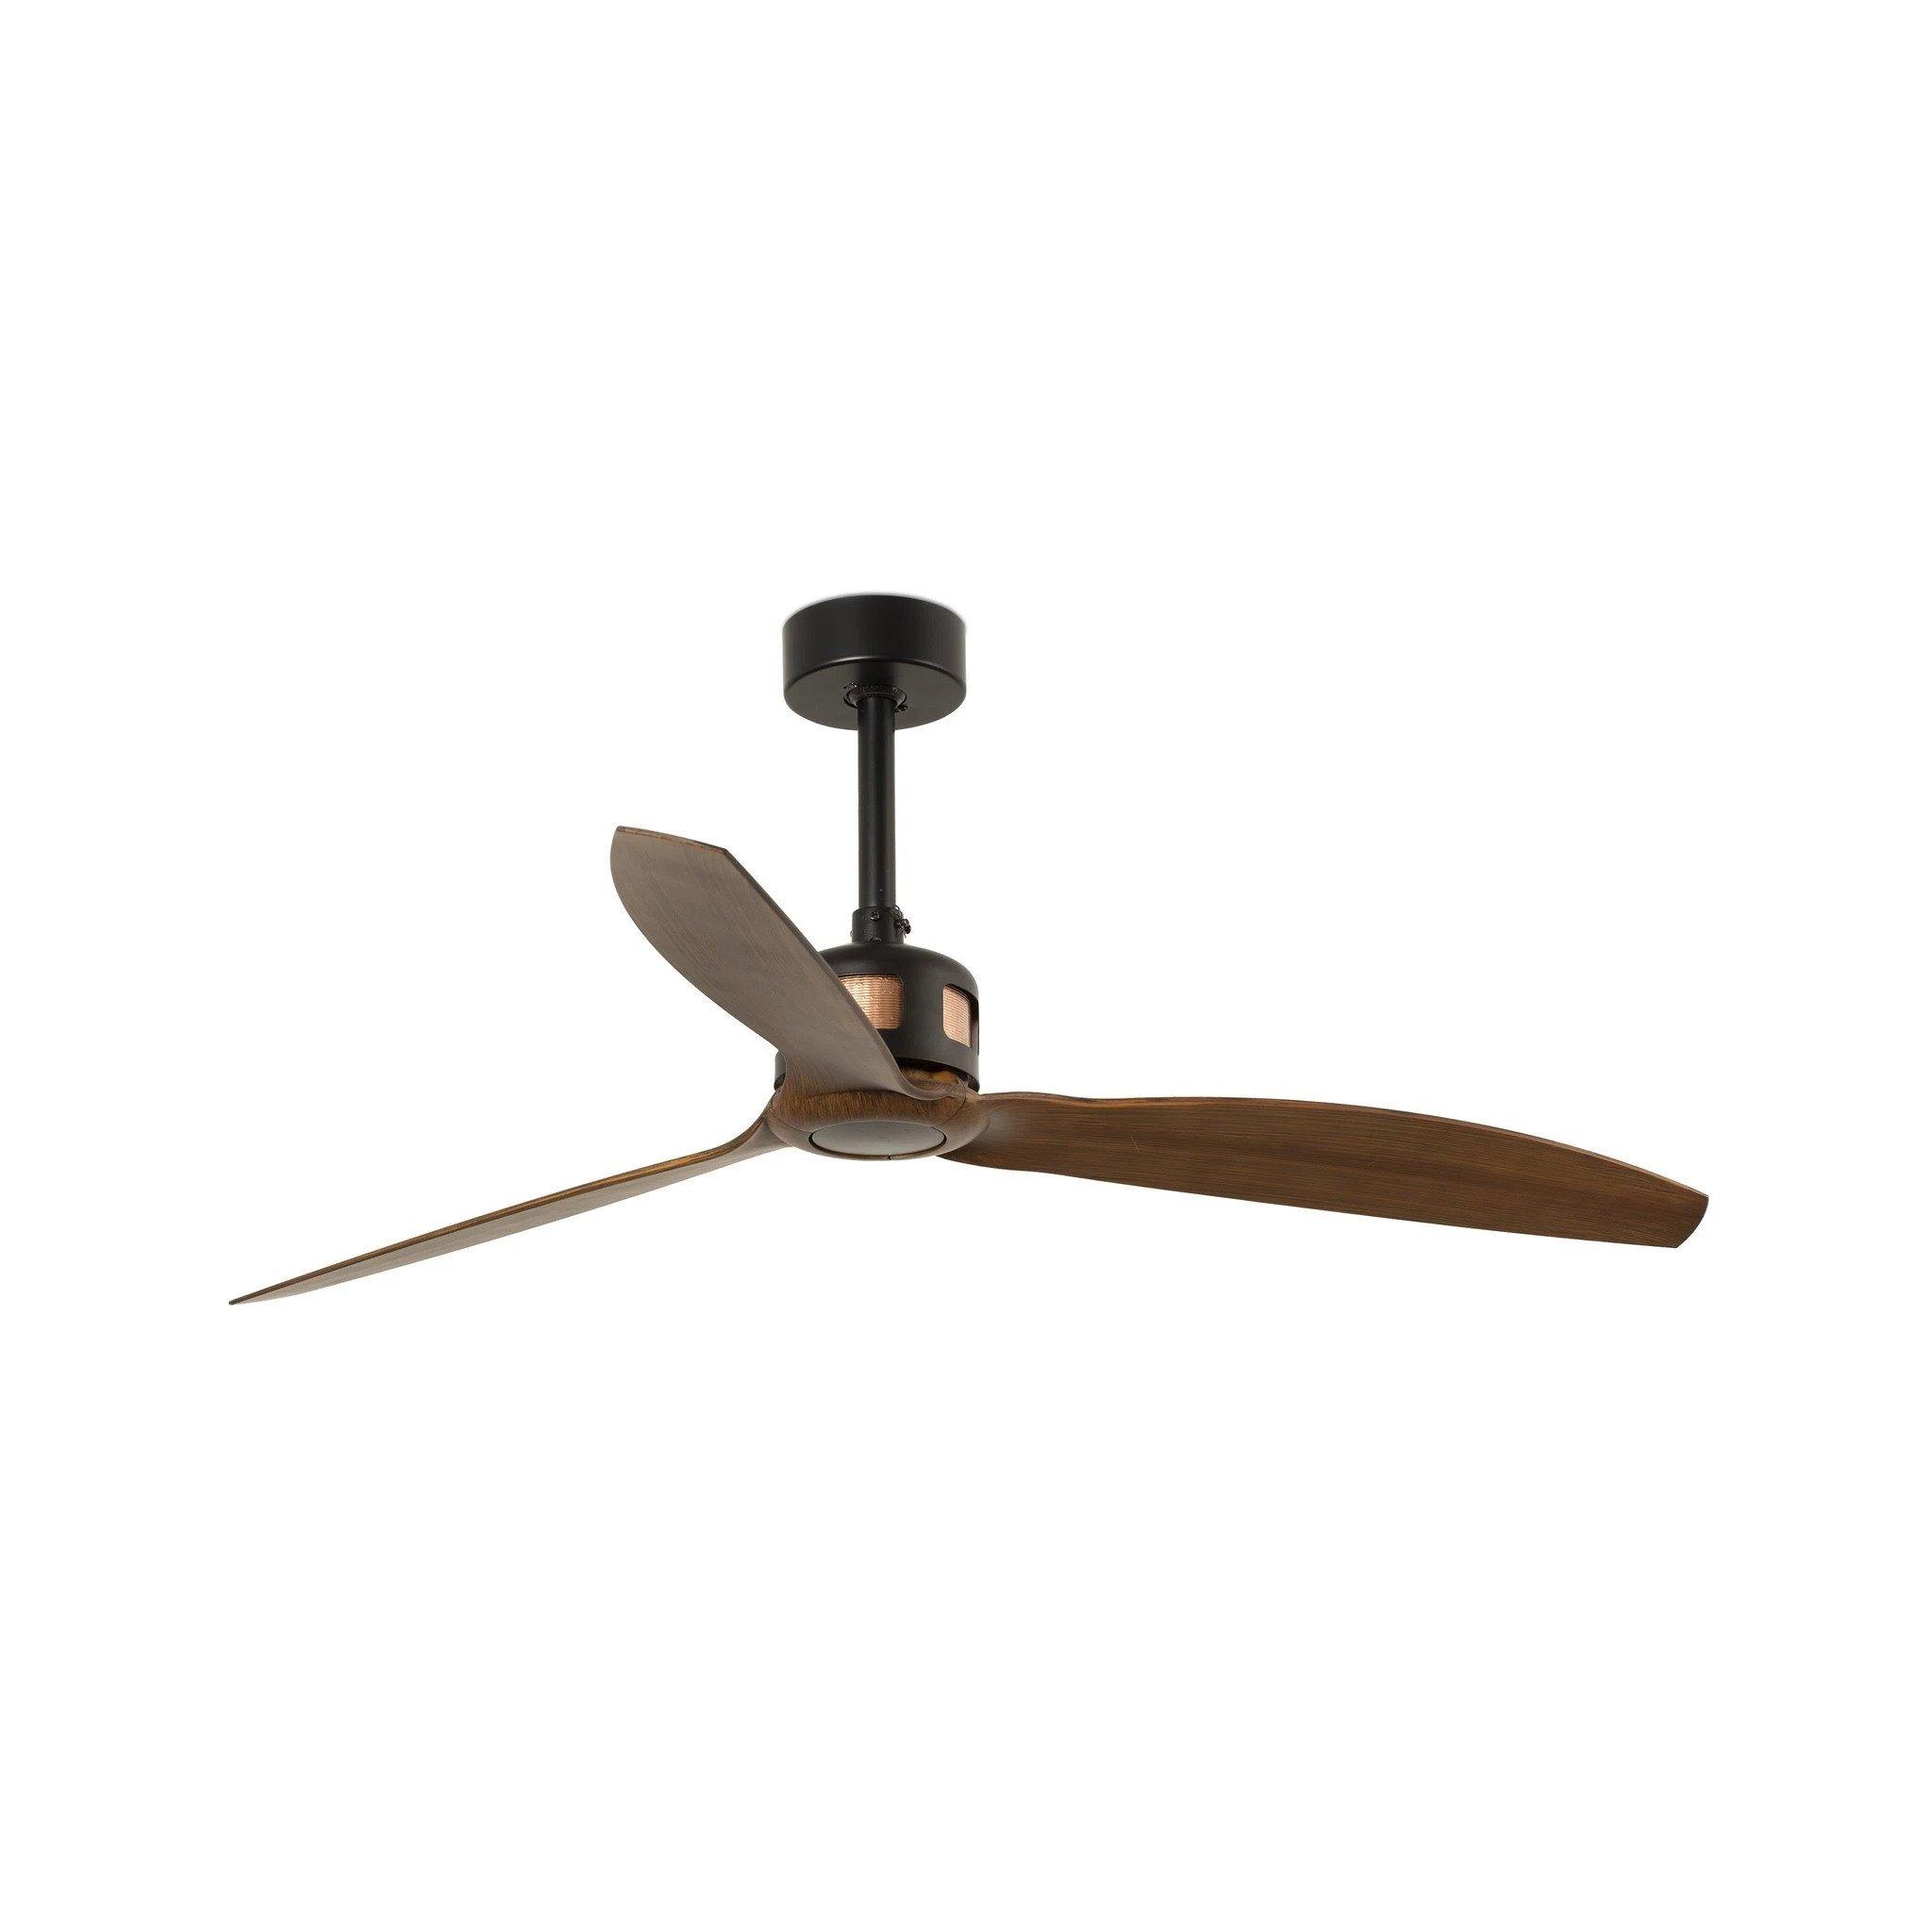 Copper Fan Black Wood Ceiling Fan Smart Remote Included